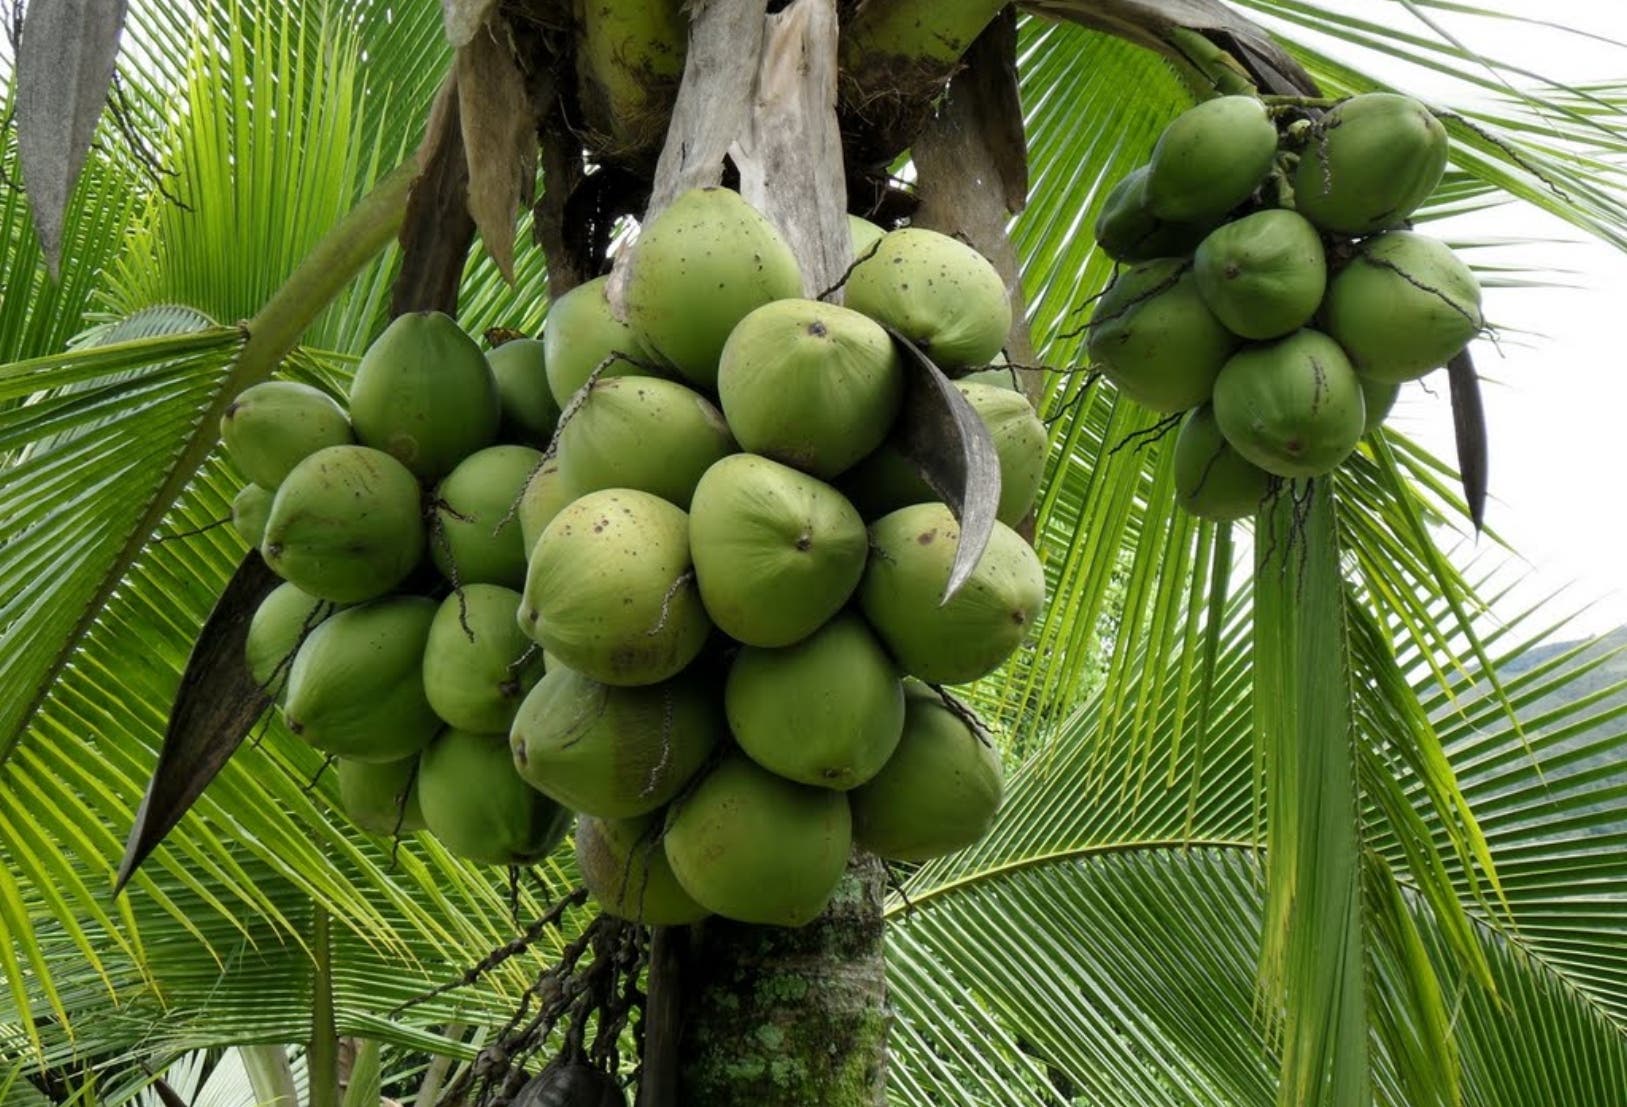 Demanda de coco sube en mercado internacional